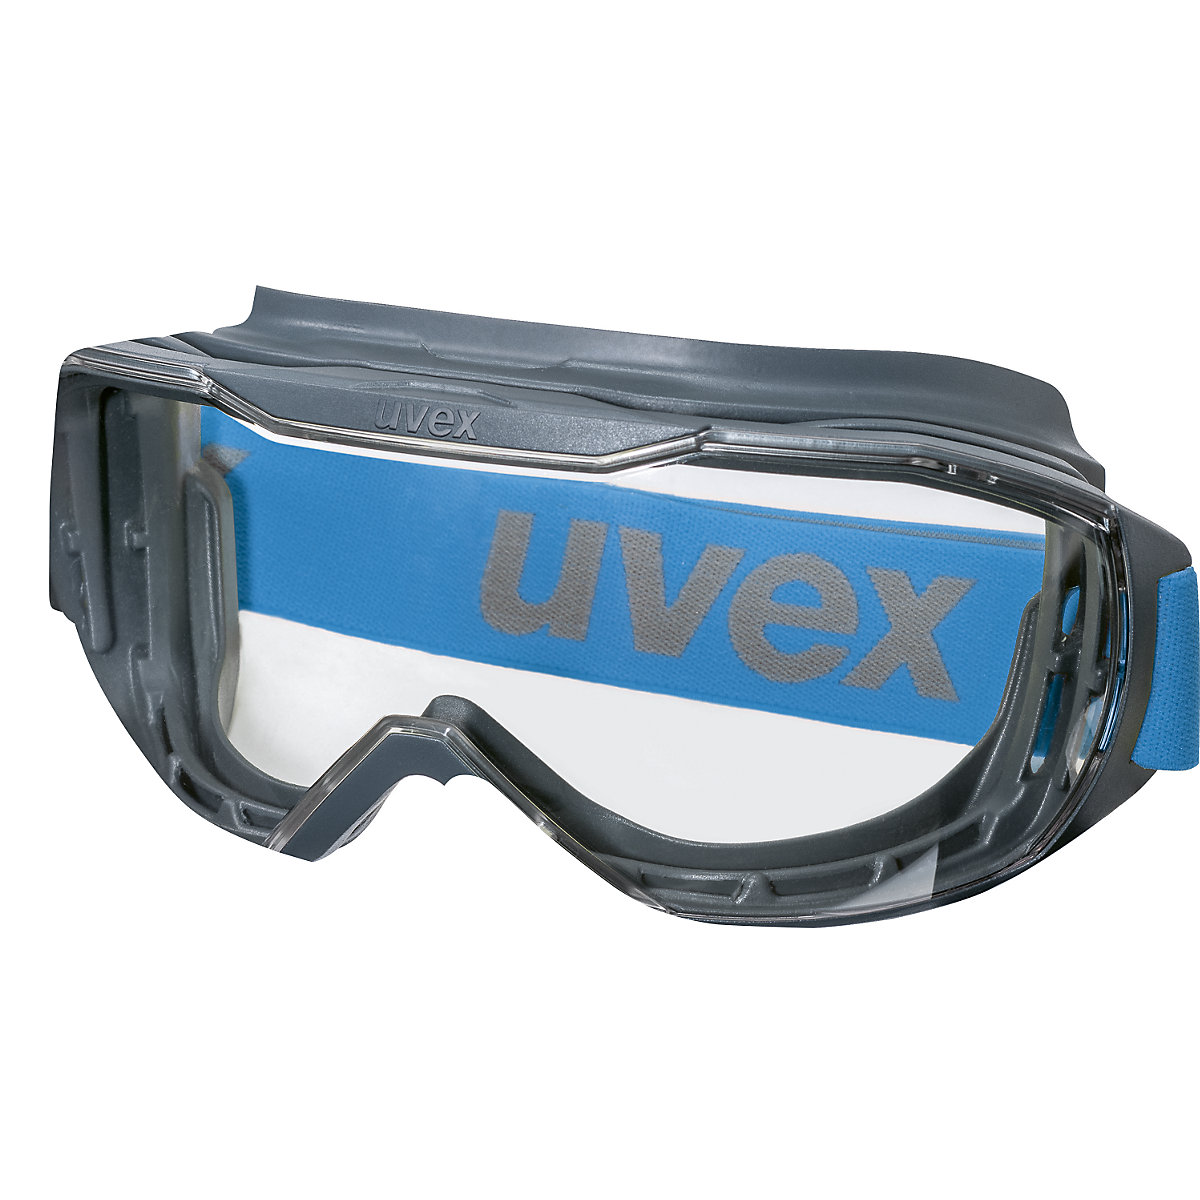 Velika zaščitna očala megasonic - Uvex